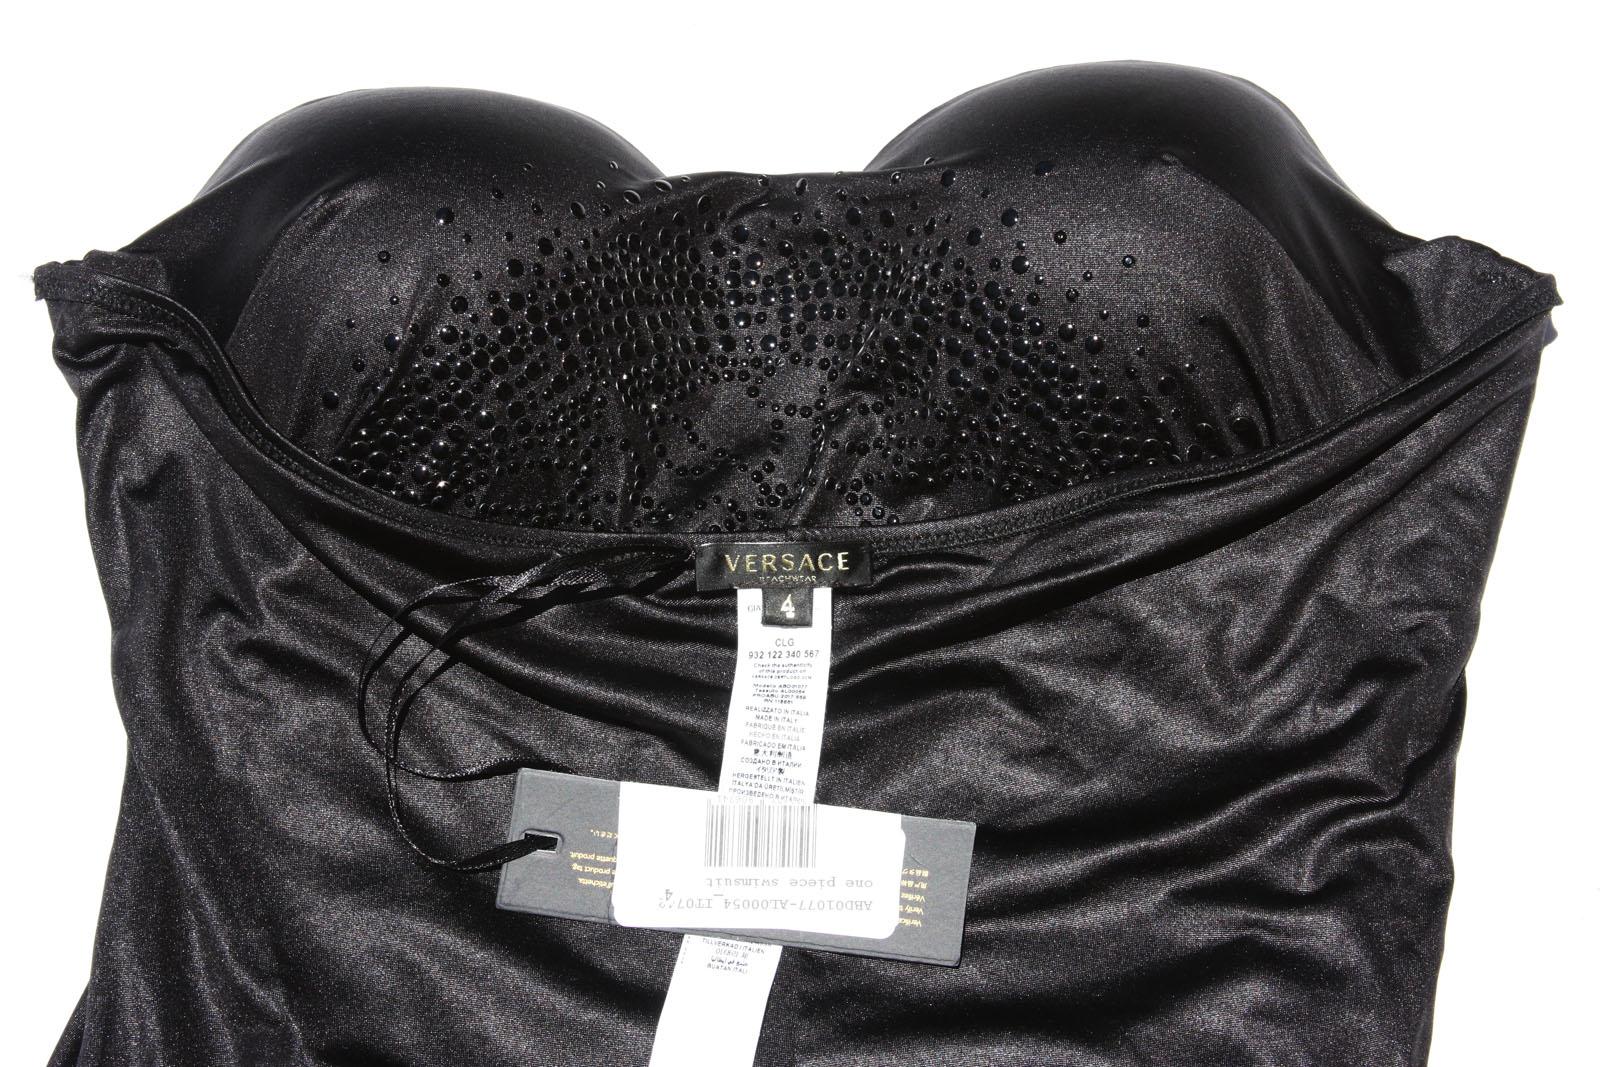 New Versace Black Jersey Embellished Medusa Swimsuit 1, 2, 4 For Sale 3